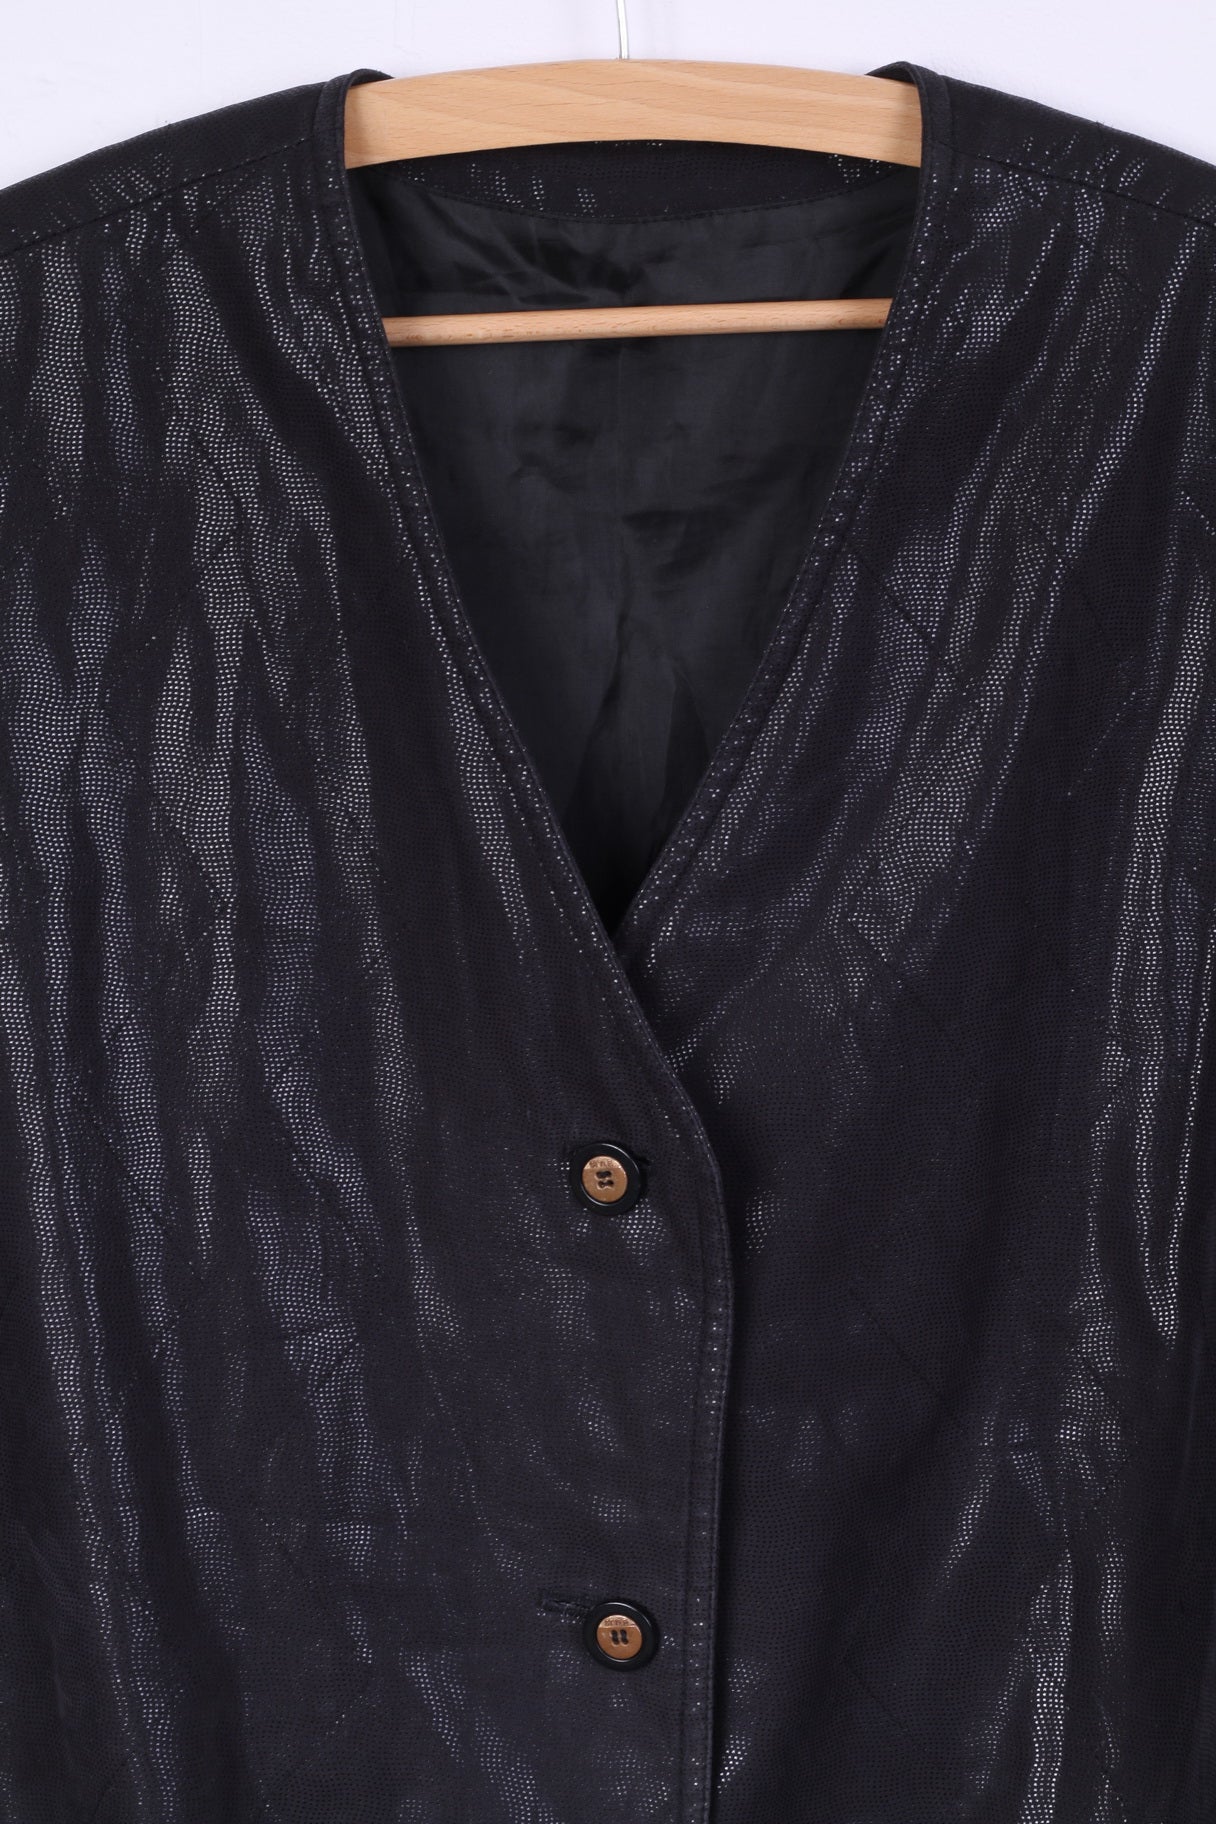 Vintage Women 18 50 XL Vest Black Shiny Buttoned Waistcoat Disco Top